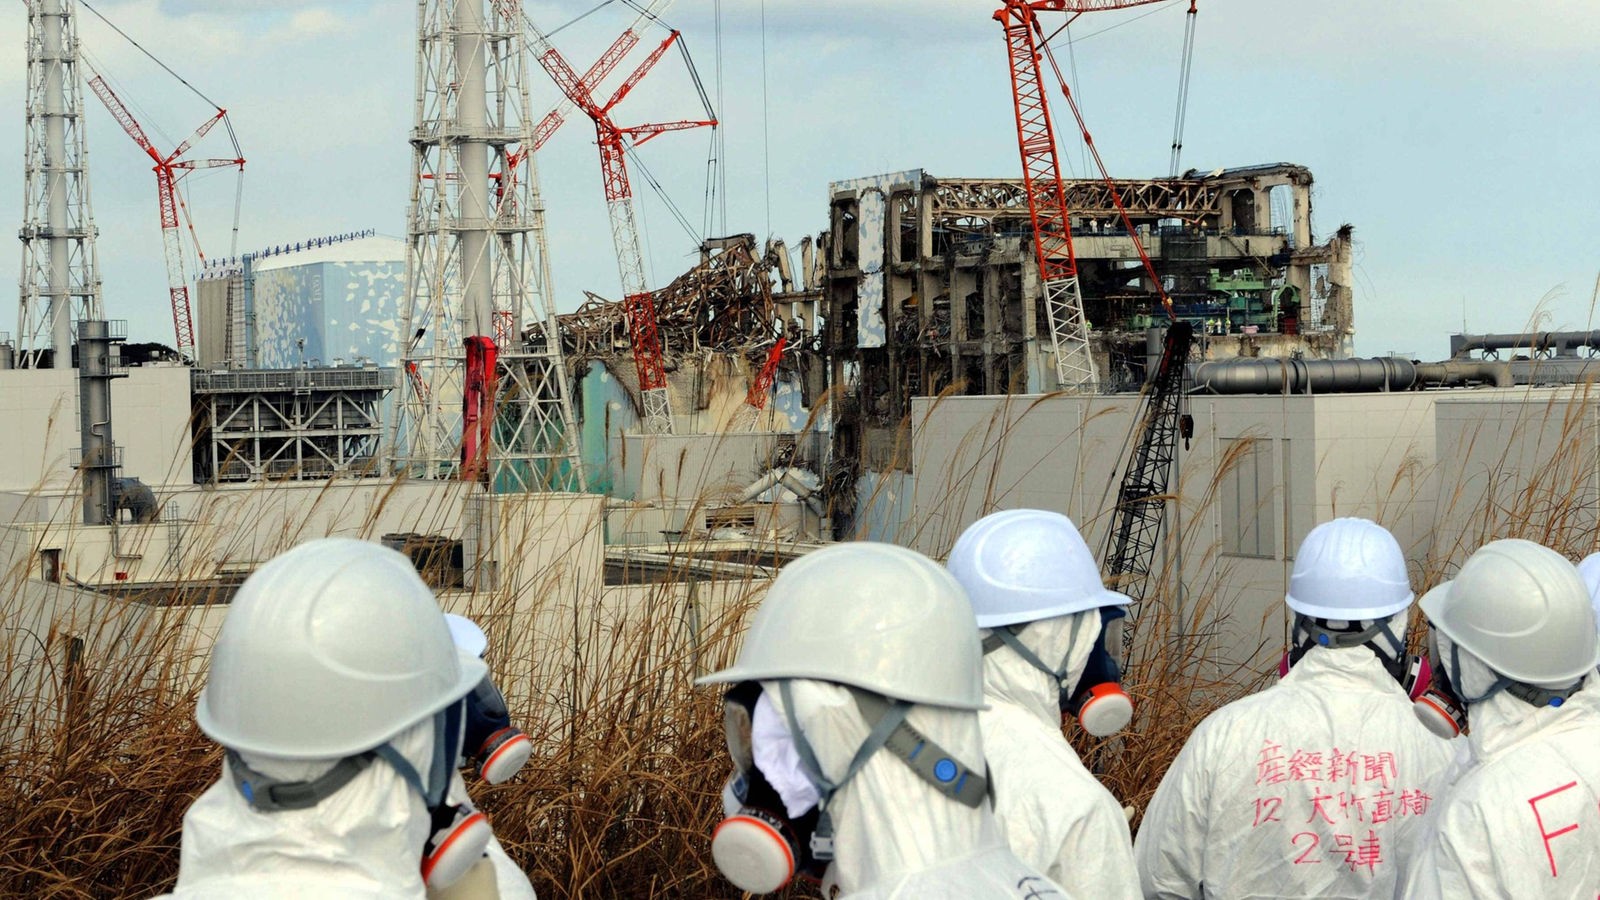 Das Beitragsbild des Dok5 Jenseits der Vorstellung zeigt Journalisten und Mitarbeiter von Tepco in Schutzausrüstung und Masken vor den Trümmern des Kernreaktors in Fukushima.